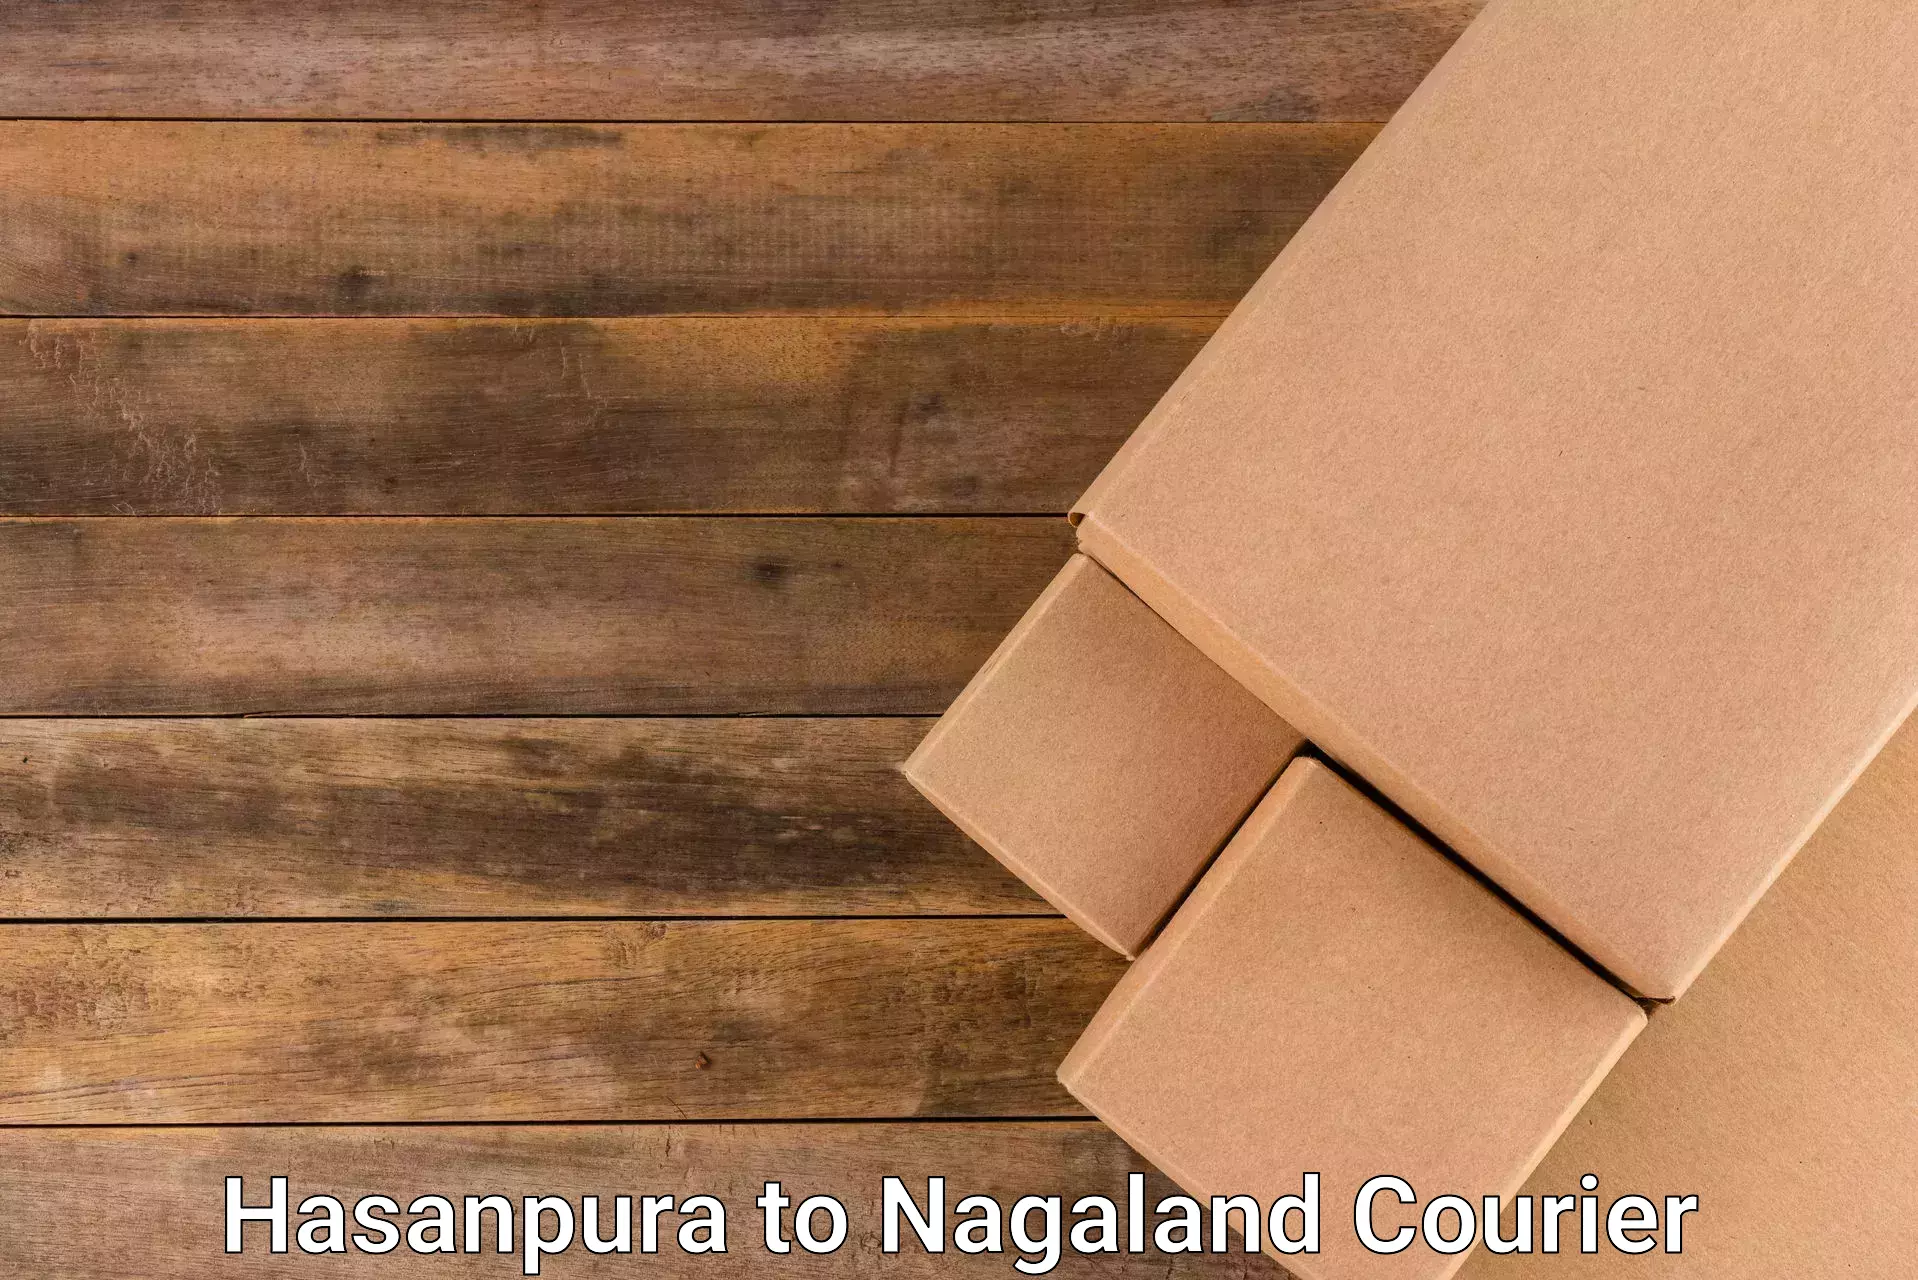 Individual parcel service Hasanpura to Nagaland